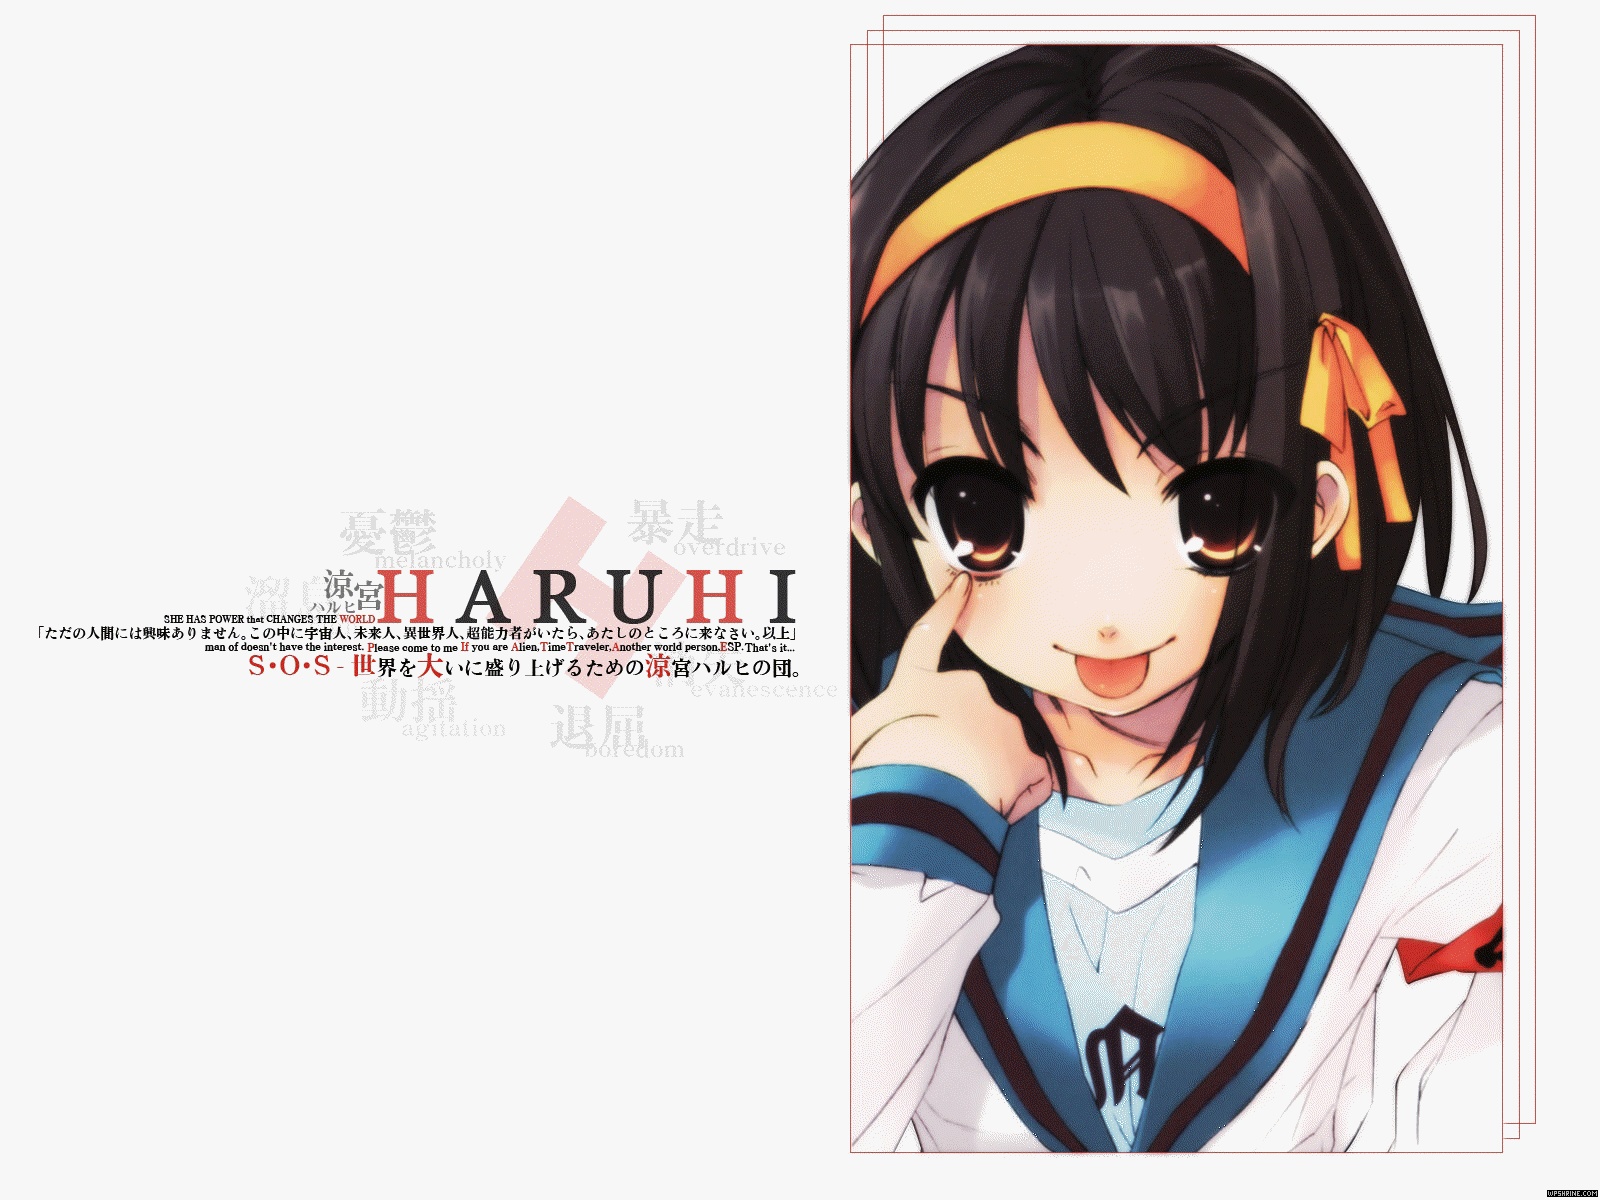 Haruhi Suzumiya - Haruhi Suzumiya Phone , HD Wallpaper & Backgrounds